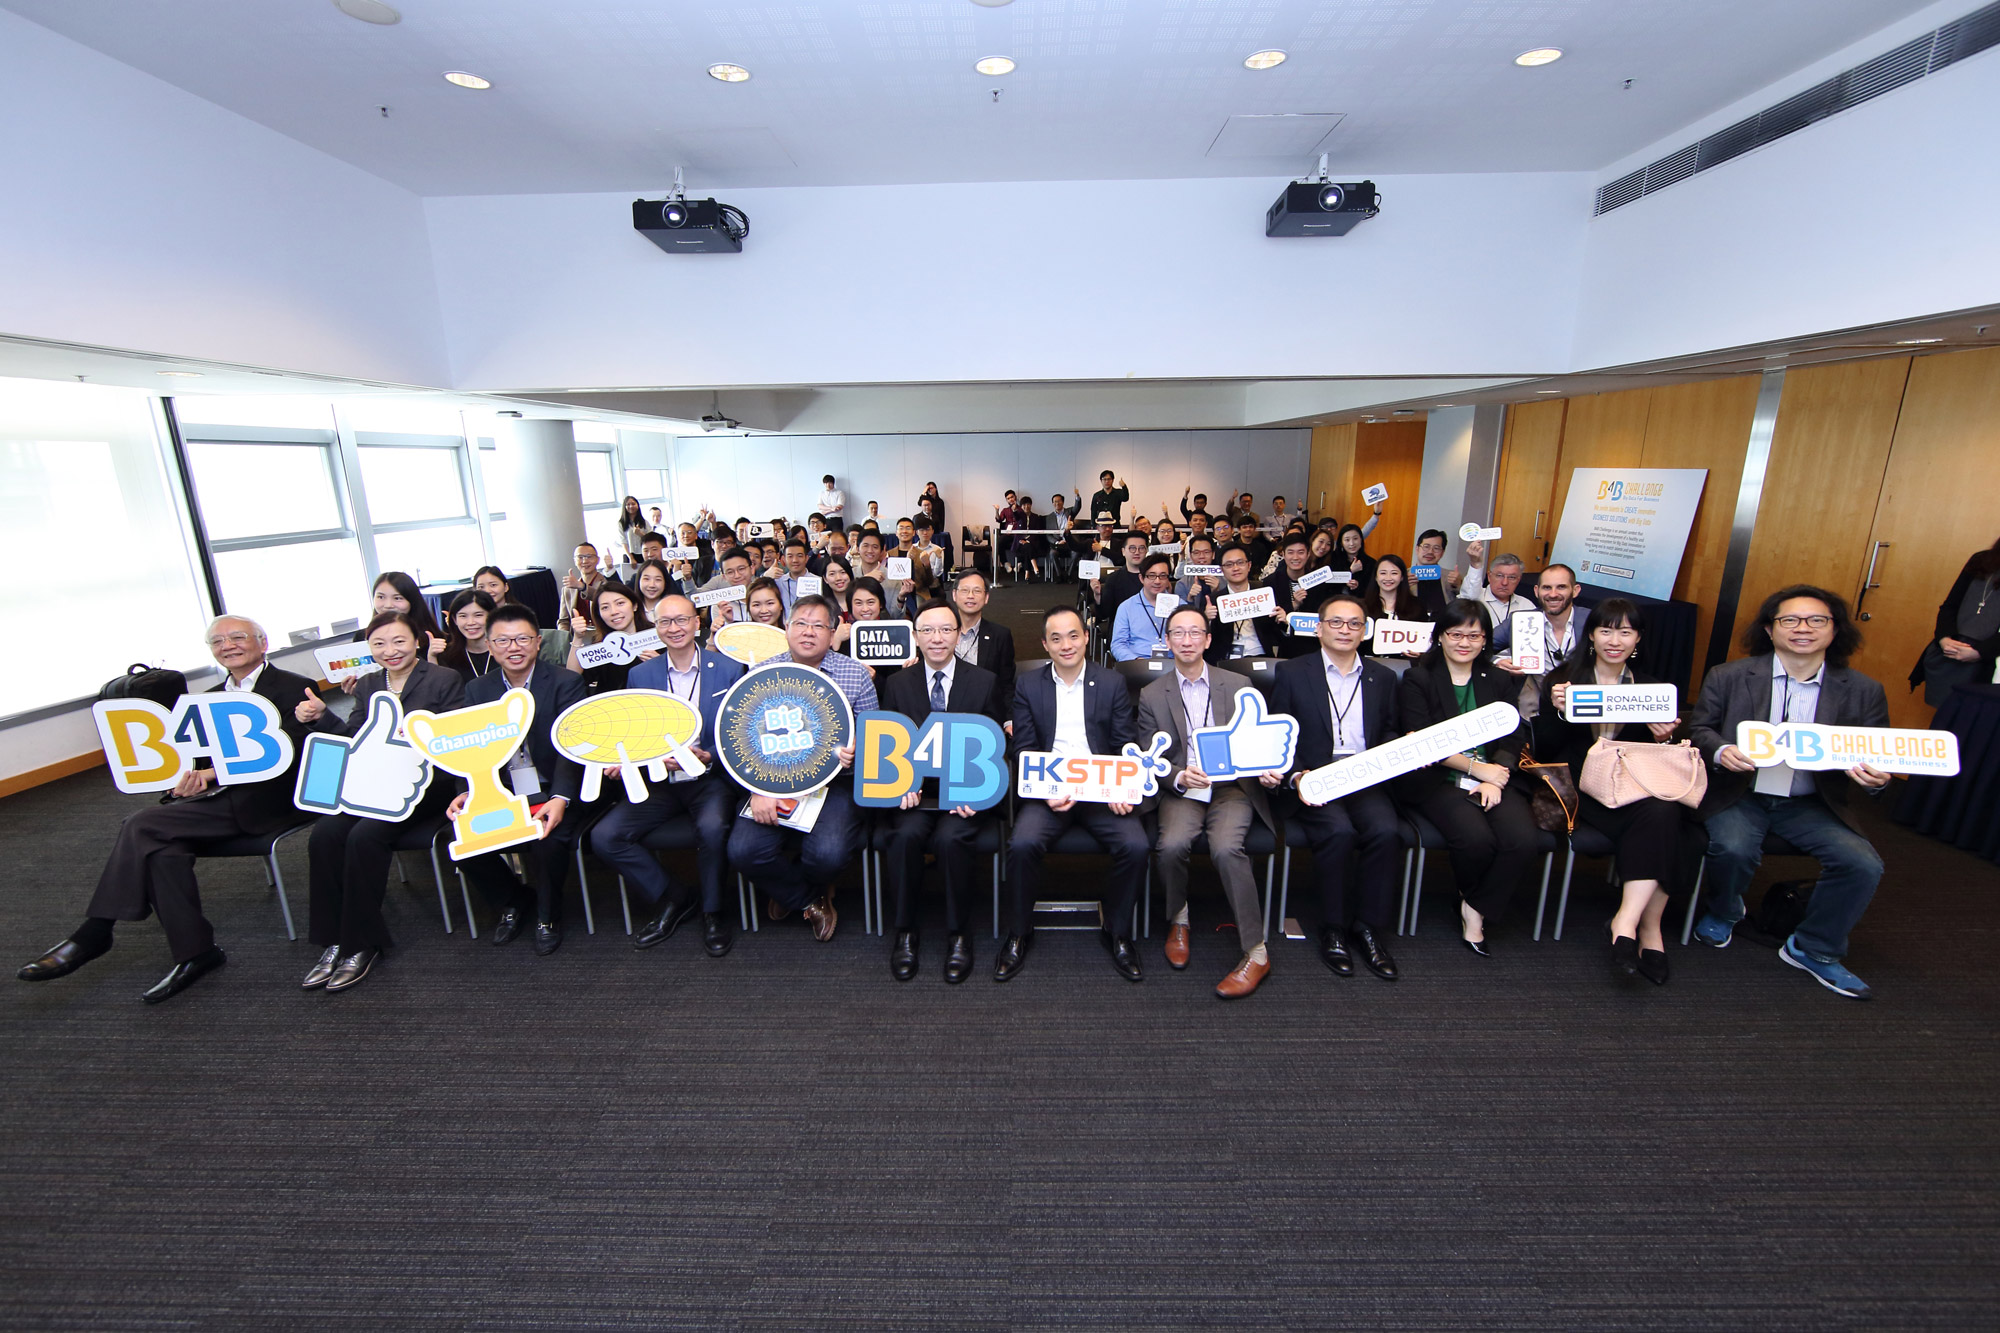 政府资讯科技总监林伟乔先生（前排左六）于「B4B大数据应用挑战赛」颁奖典礼与嘉宾及参赛者合照